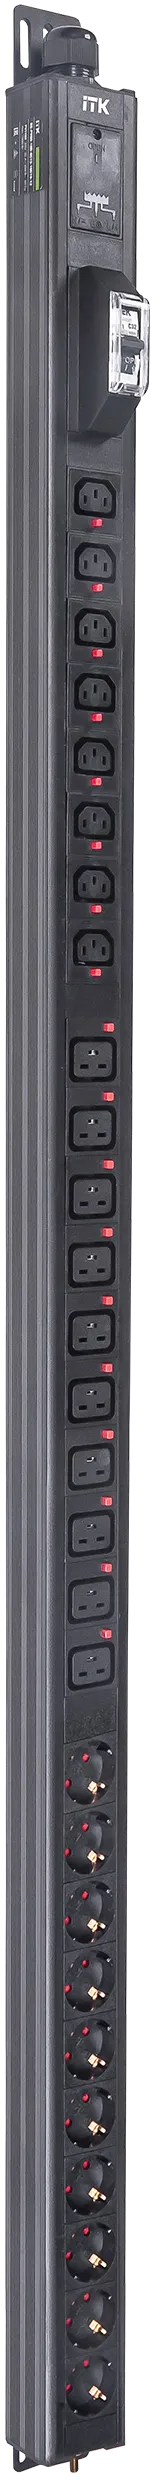 ITK BASE PDU вертикальный PV1102 33U 1 фаза 32А 10 розеток SCHUKO (немецкий стандарт) + 8 розеток C13 + 10 розеток C19 без кабеля с клеммной колодкой